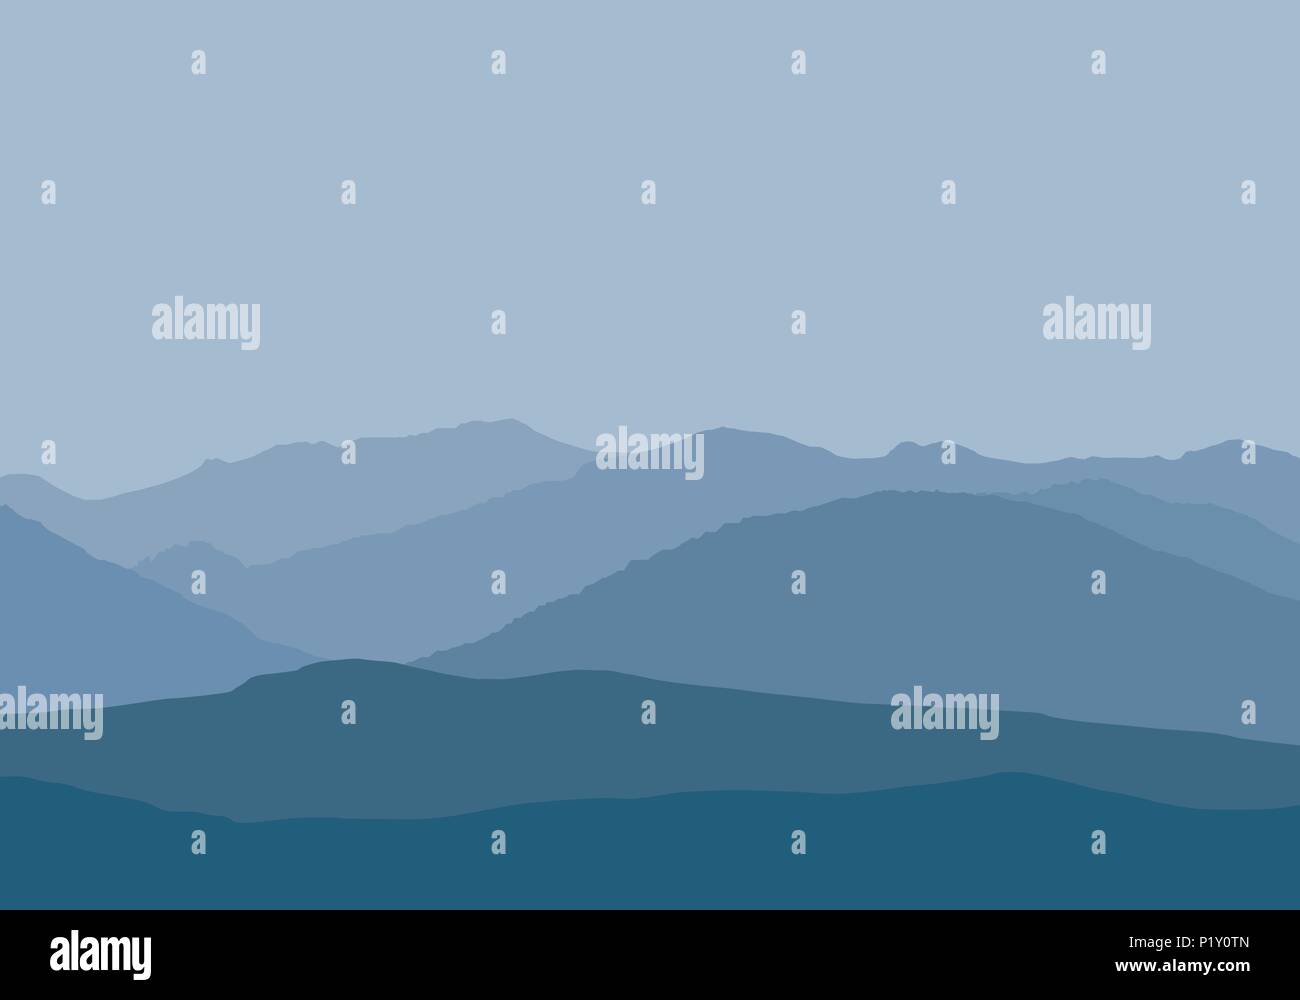 Vector Illustration von Berggipfeln in misty Haze unter Grau-blauer Himmel - einfach flach Stock Vektor